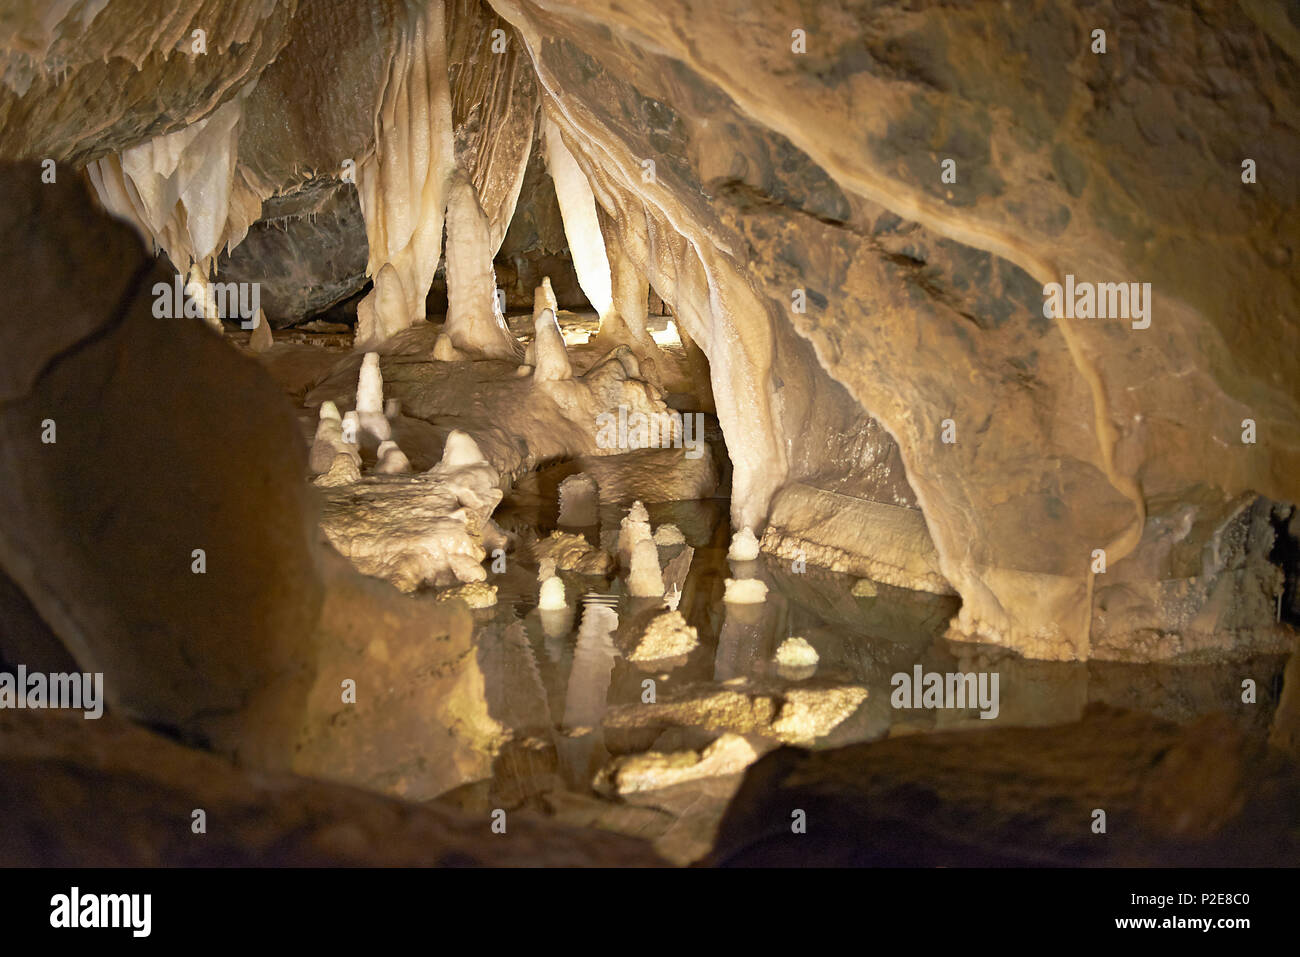 Uno sguardo all'interno delle grotte atta in Attendorn profondo sottosuolo con un sacco di calcare stalagmiti e stalagtites formazioni rocciose Foto Stock